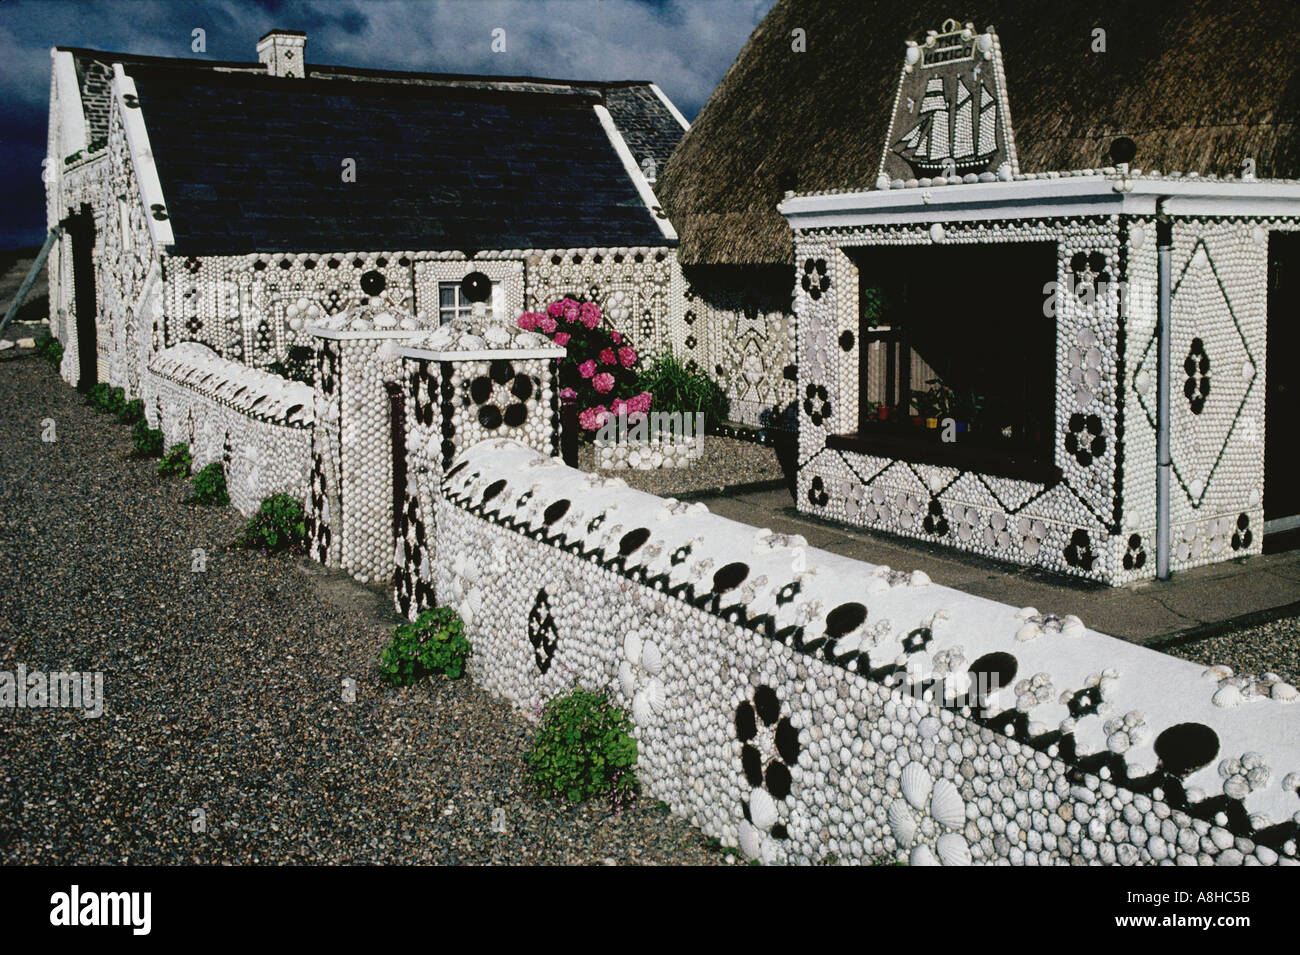 Die späten Kevin French erstellt dieses hoch dekorierte Haus mit Meer Muscheln Cullenstown Co Wexford, Irland Stockfoto